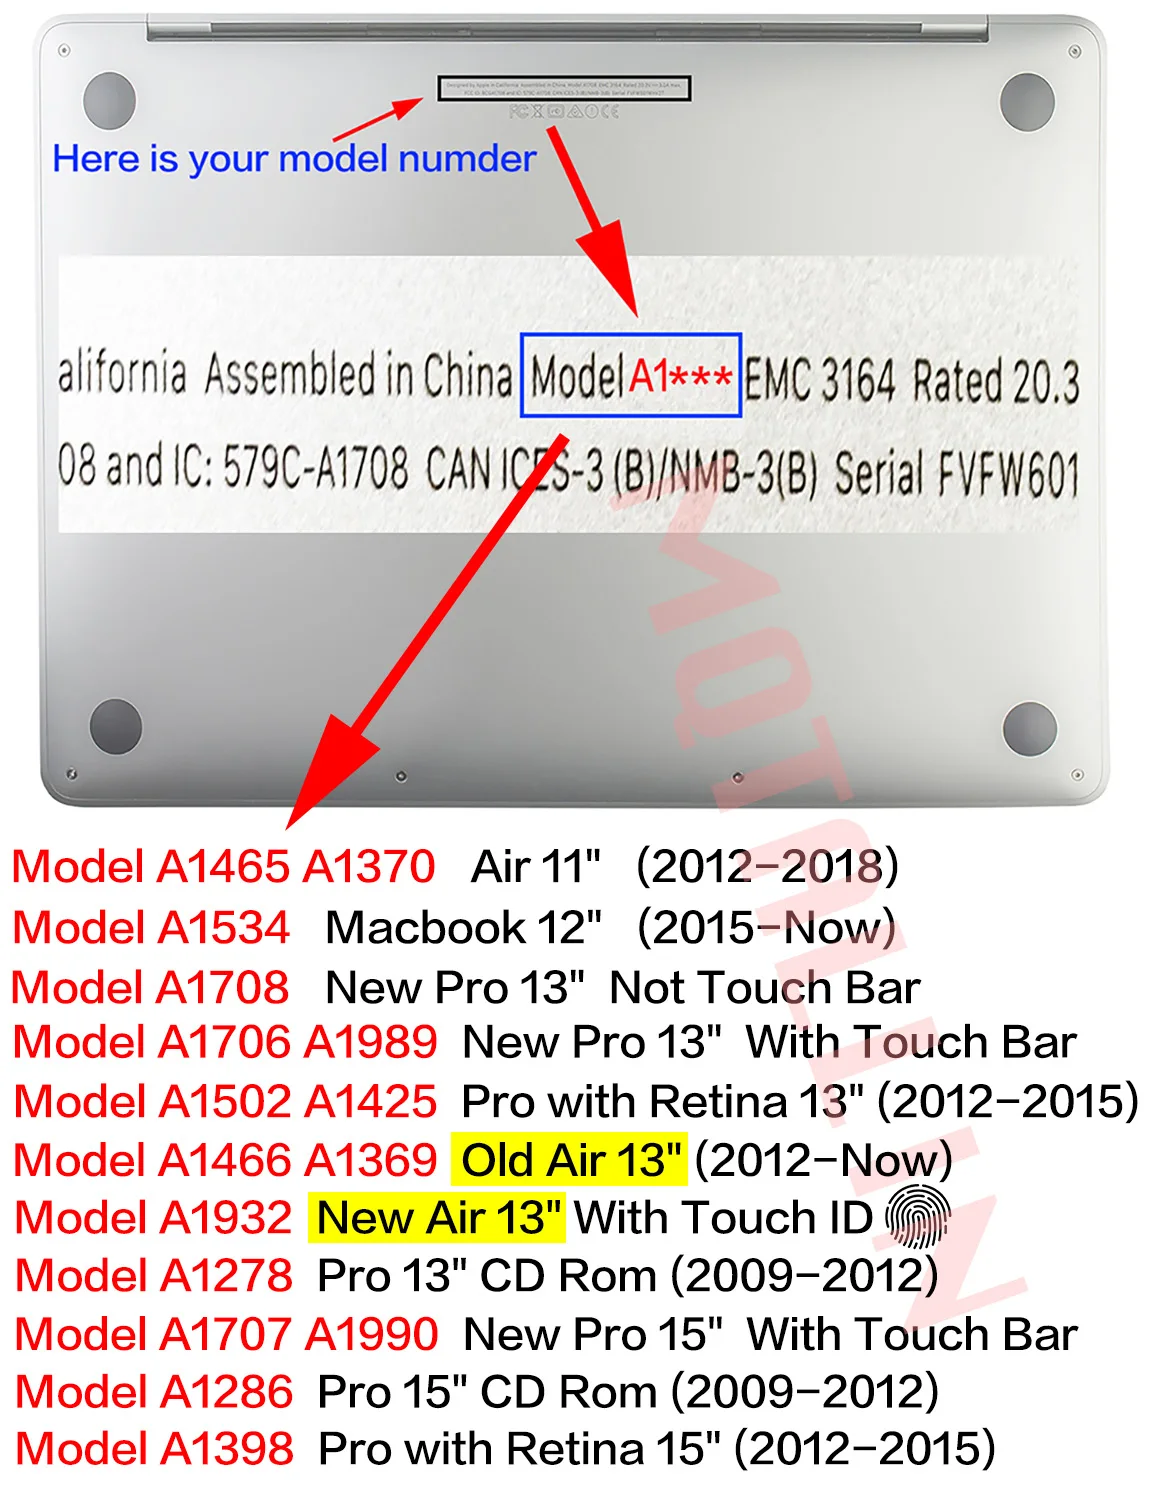 MQTALLIN, матовый/Кристальный чехол для ноутбука MacBook Pro retina Air 11 12 13 15 дюймов, для Mac book new pro/Air 13, чехол